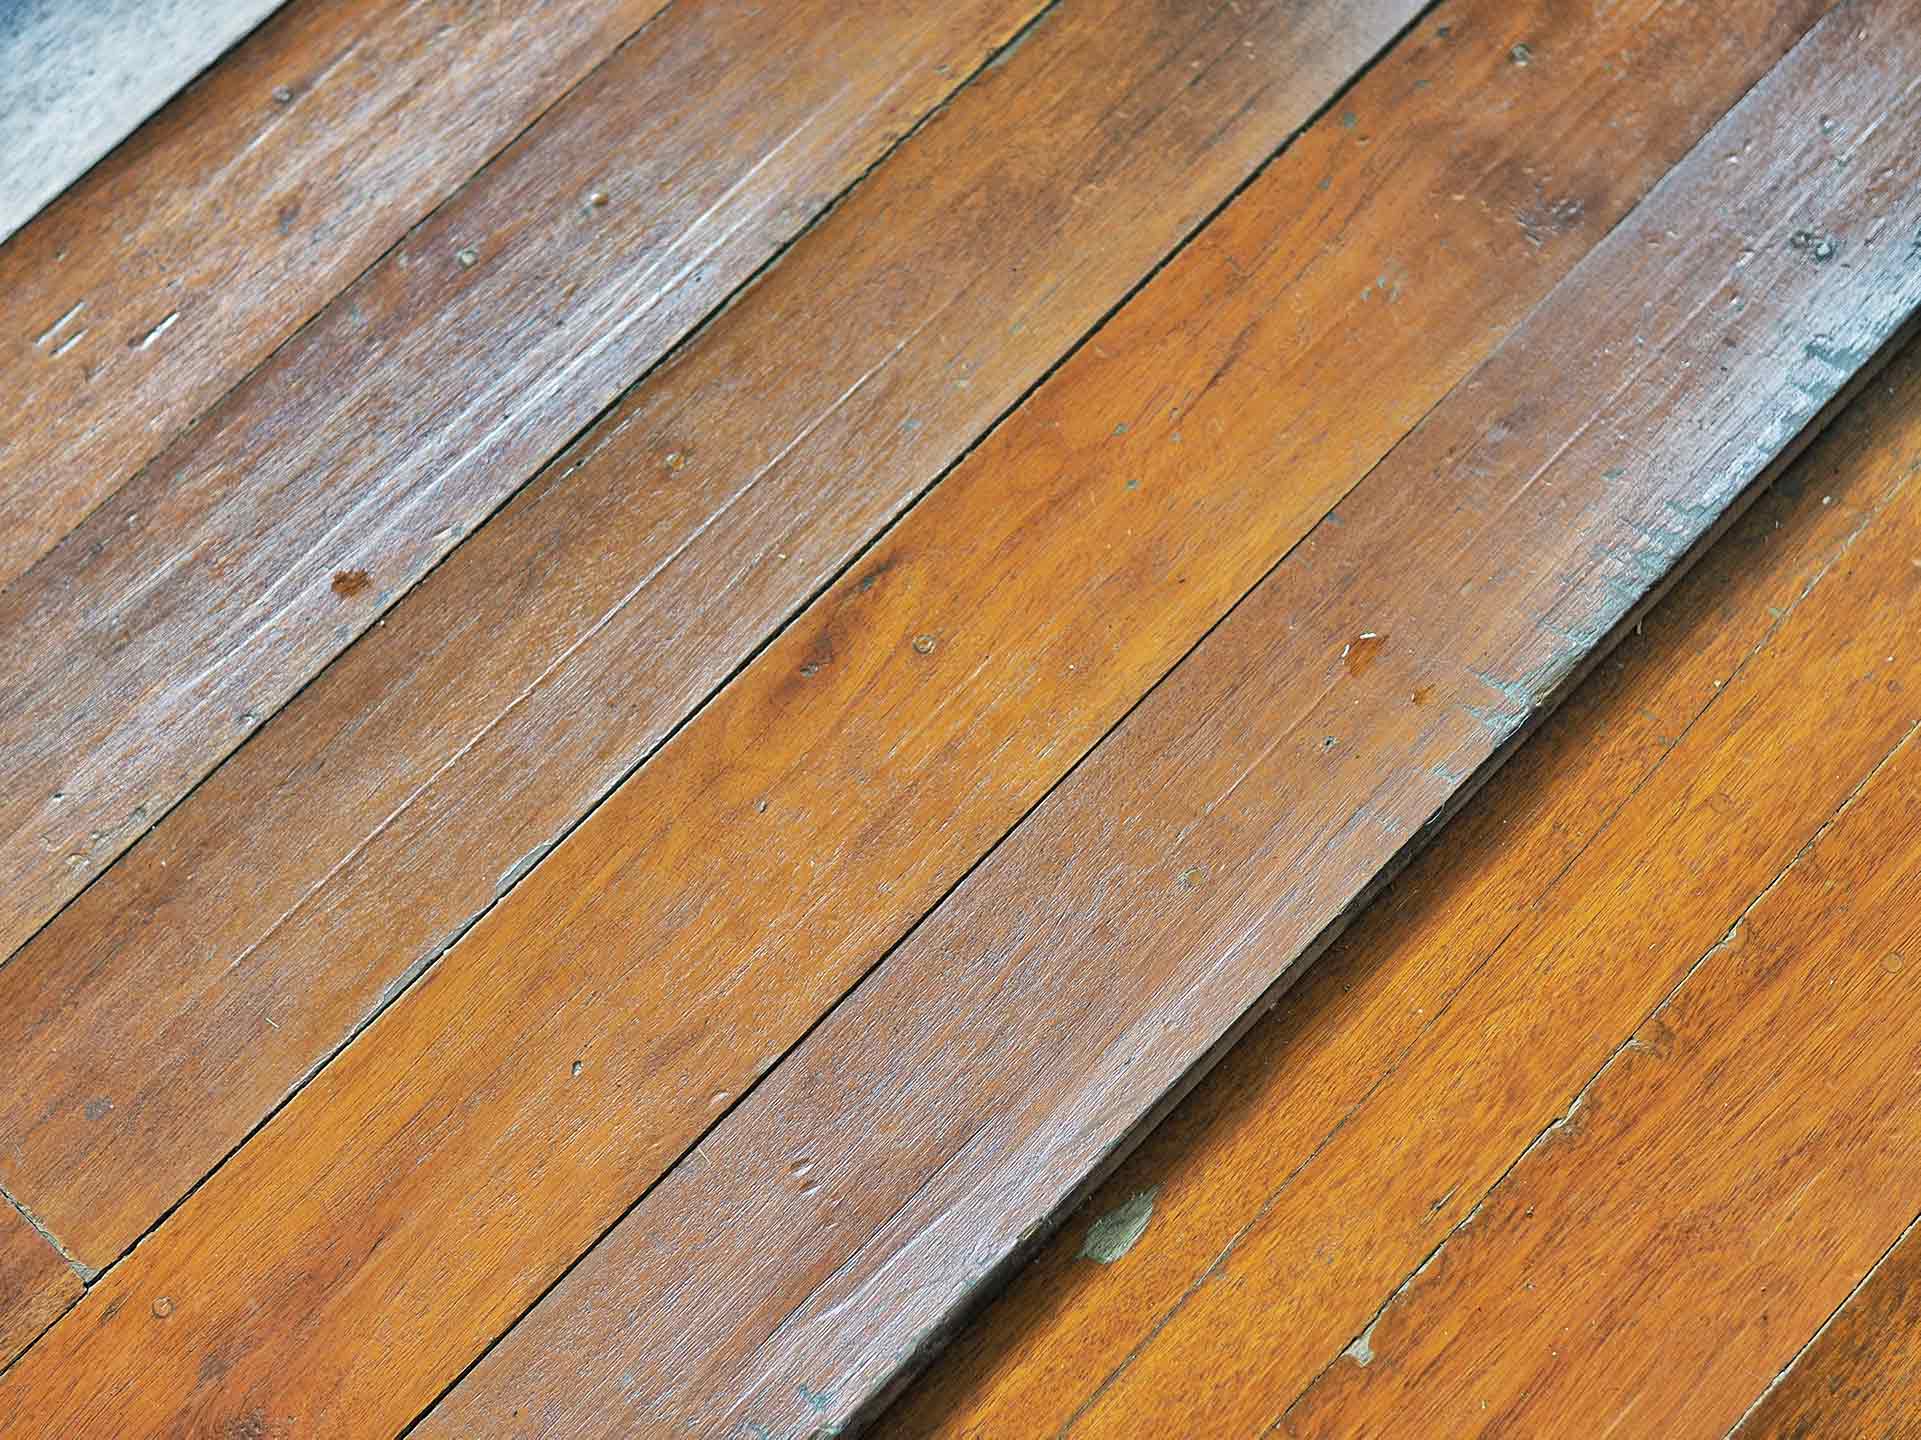 Uneven wood floors